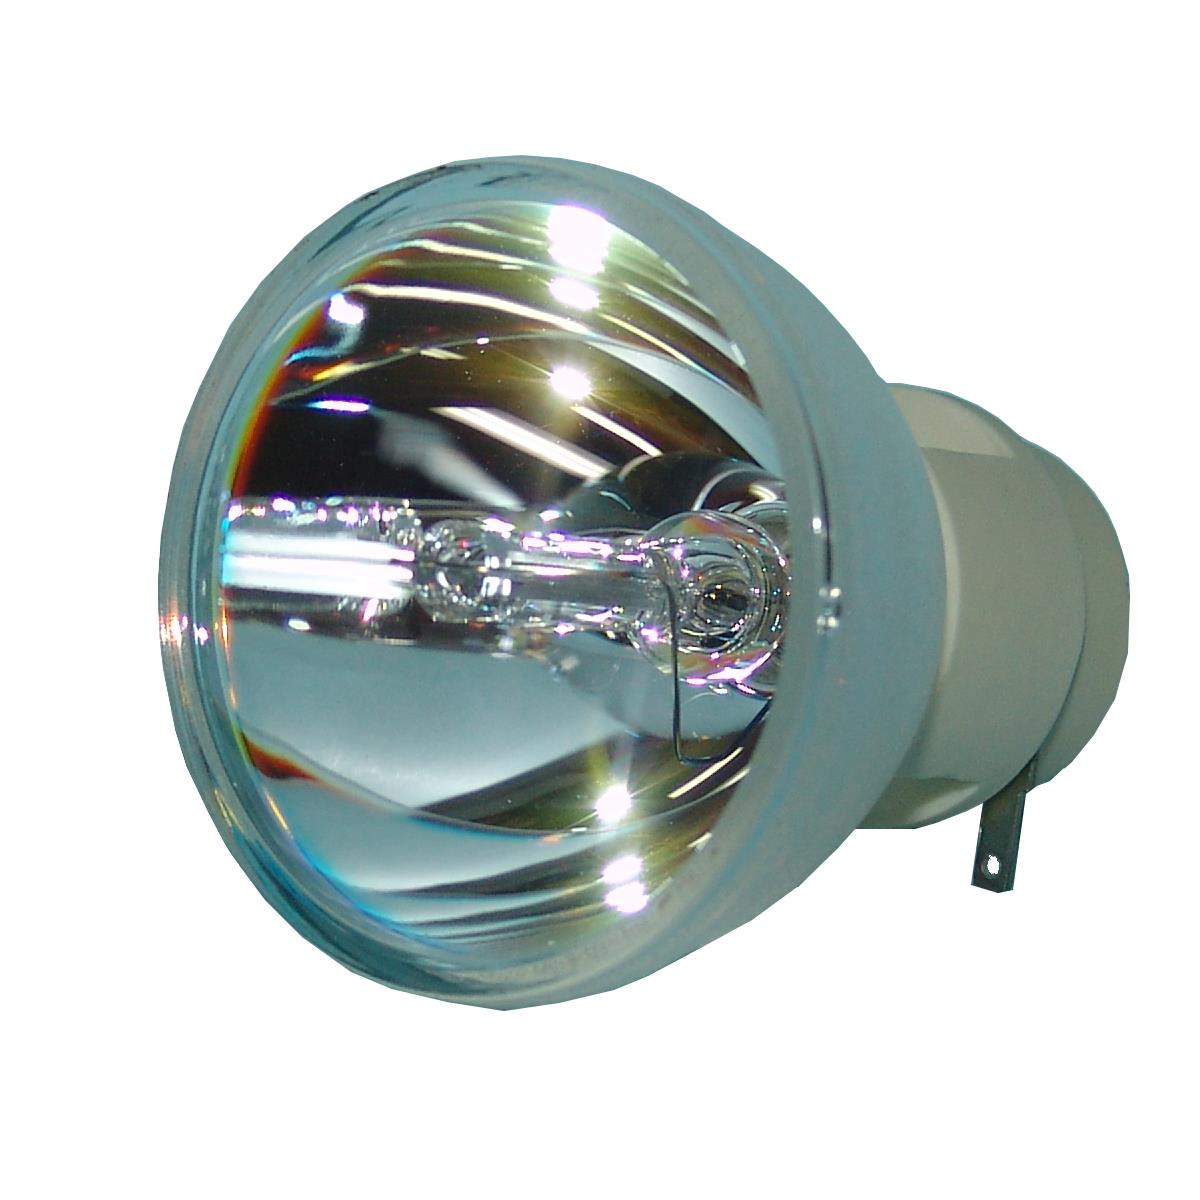 Osram Bare Lamp For Vivitek D 519 Projector DLP LCD Bulb